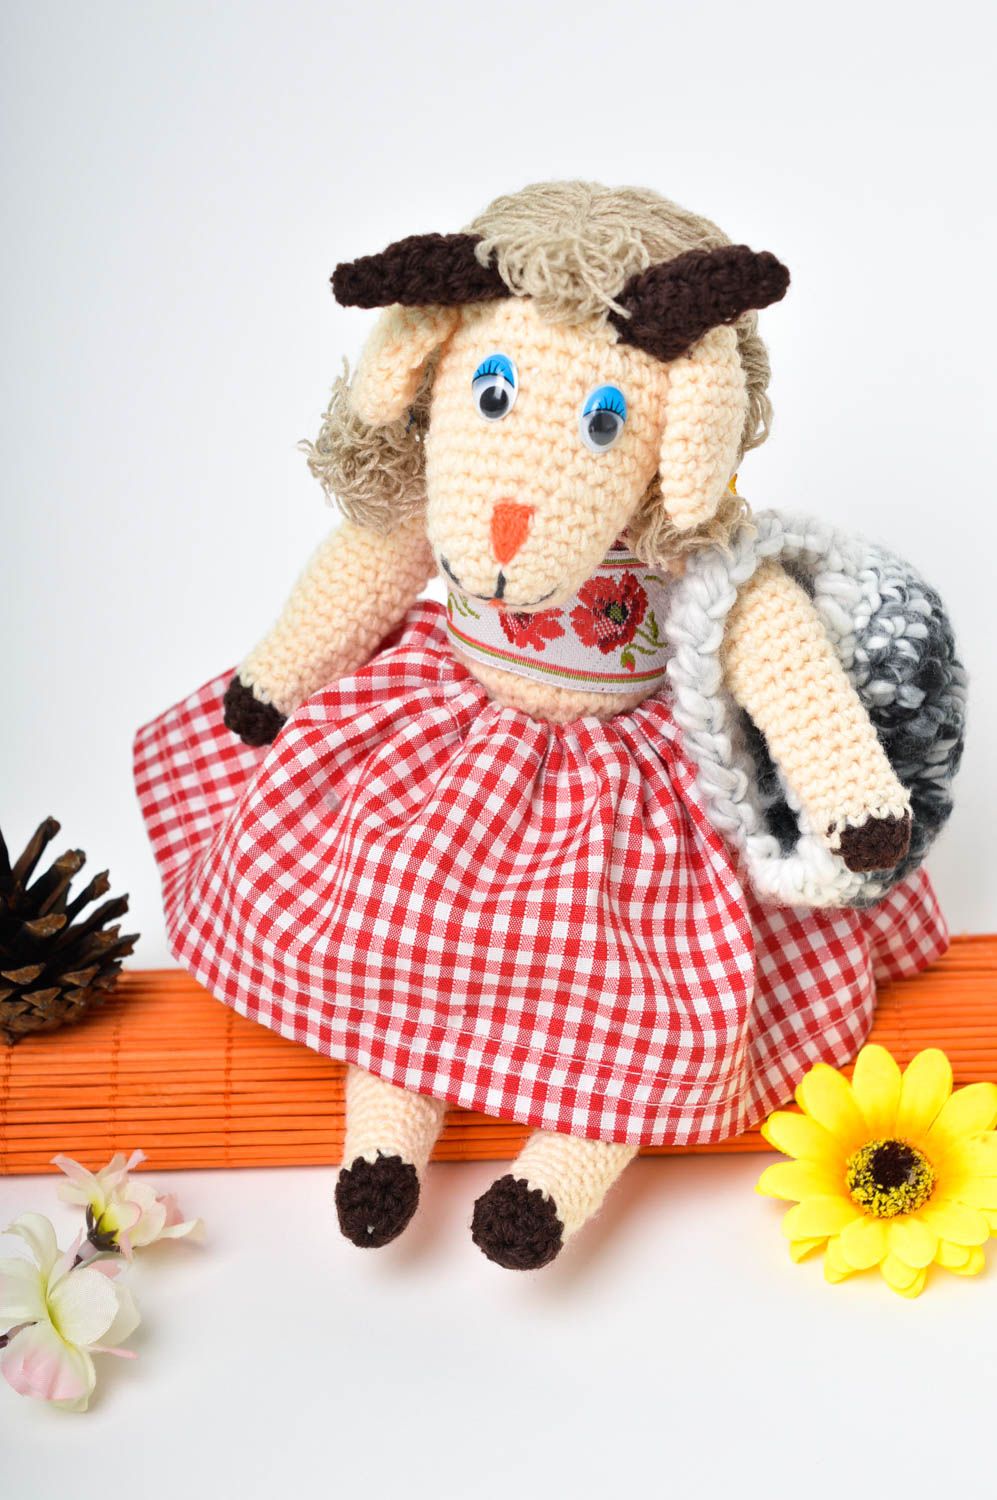 Ziege Kuscheltier Handmade Geburtstag Geschenk Kuschel Tier Textil Spielzeug foto 1